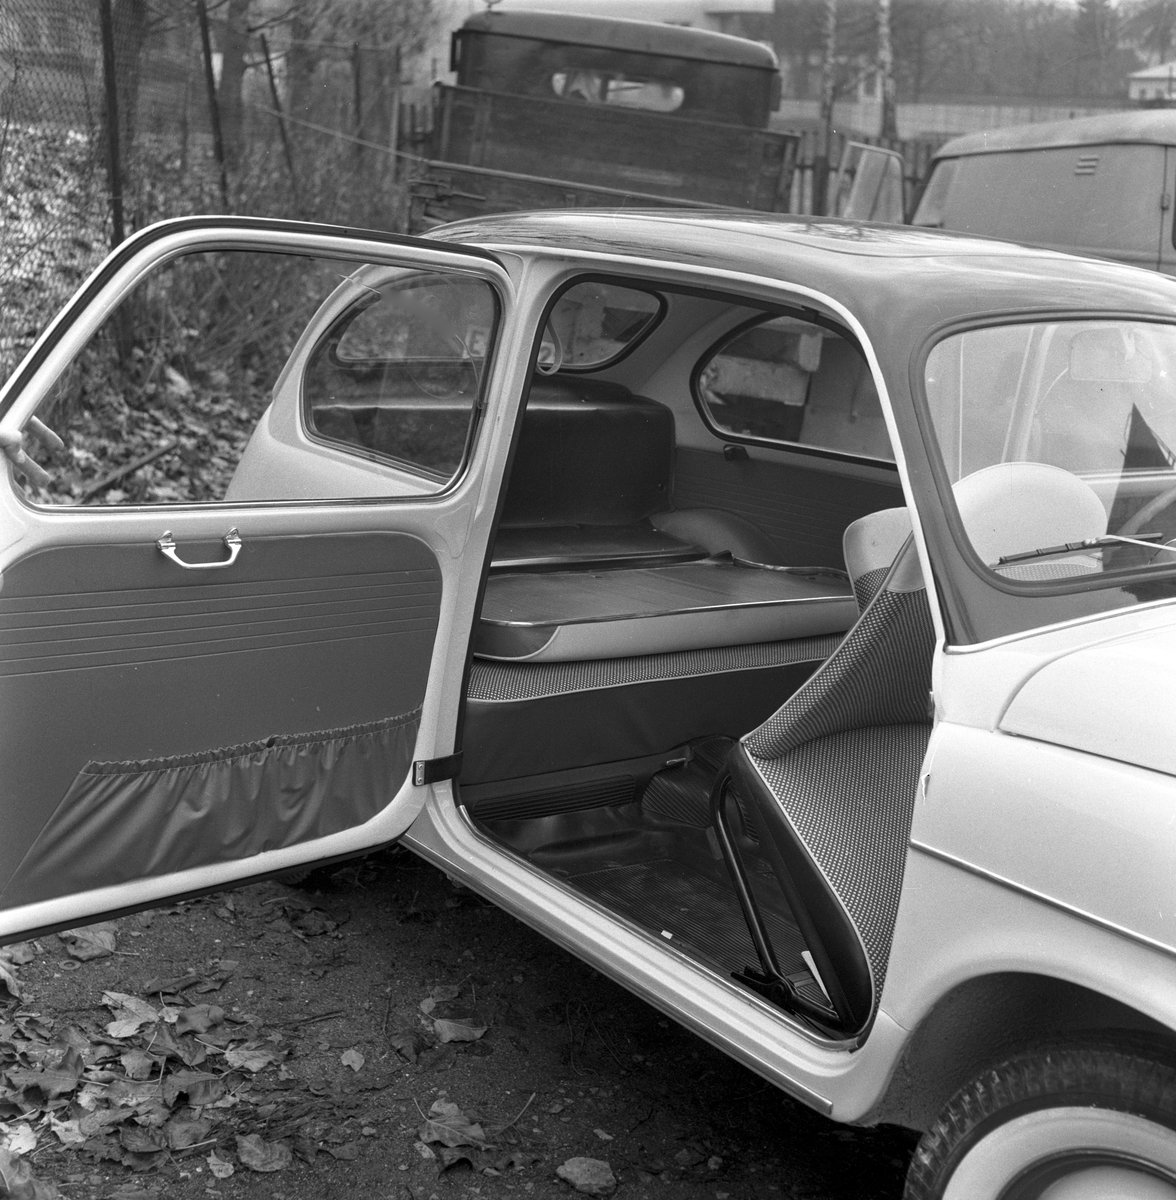 Serie. Test av bilmodellen Fiat 600. Fotografert oktober 1958. 

